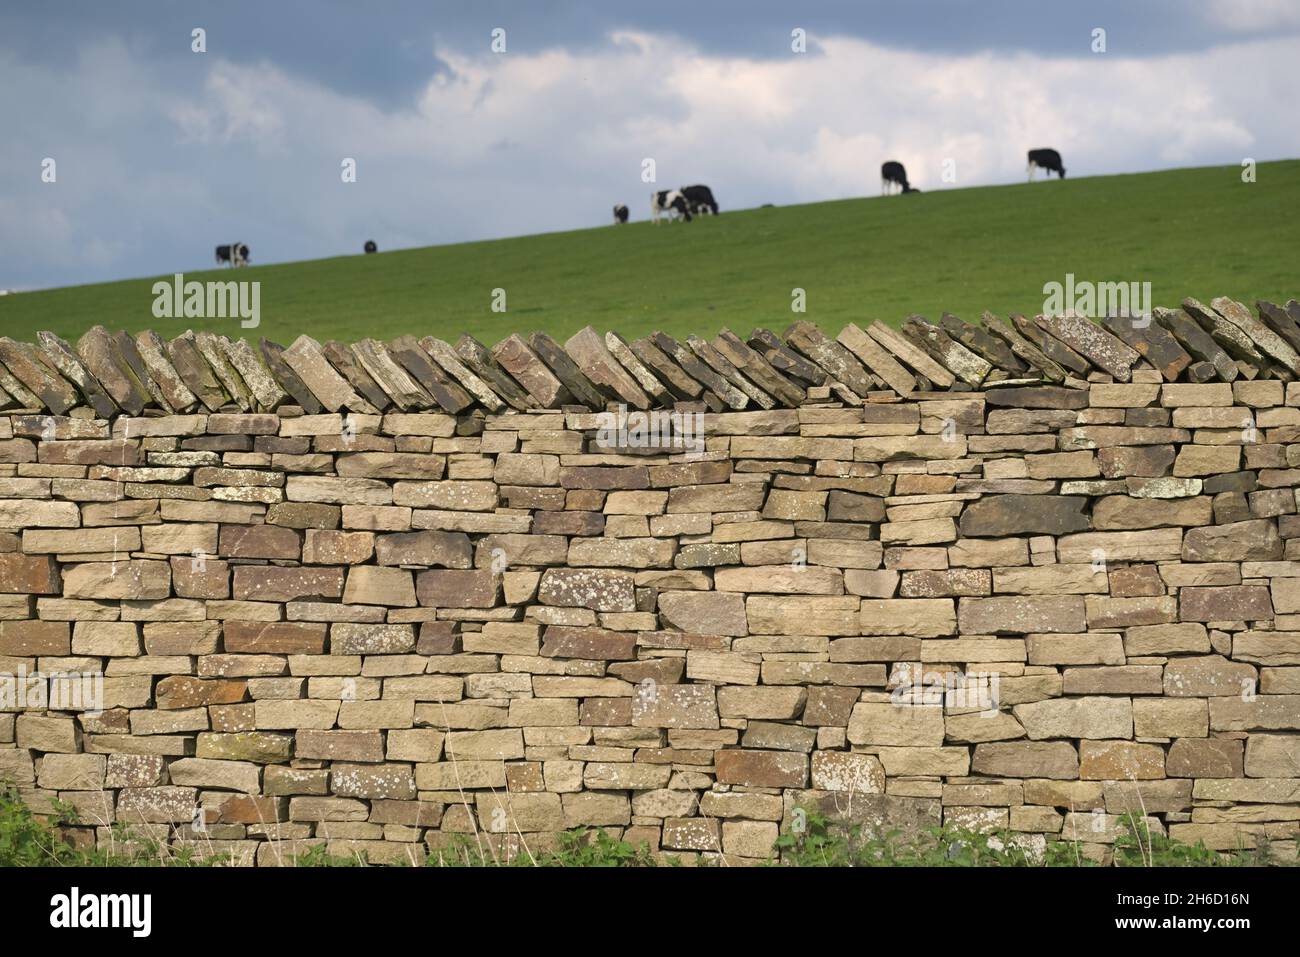 Les vaches laitières se broutent en arrière-plan derrière ce mur en pierre sèche bien structuré.Les plantes et les mauvaises herbes poussent à la base du mur, et l'herbe est succulente Banque D'Images